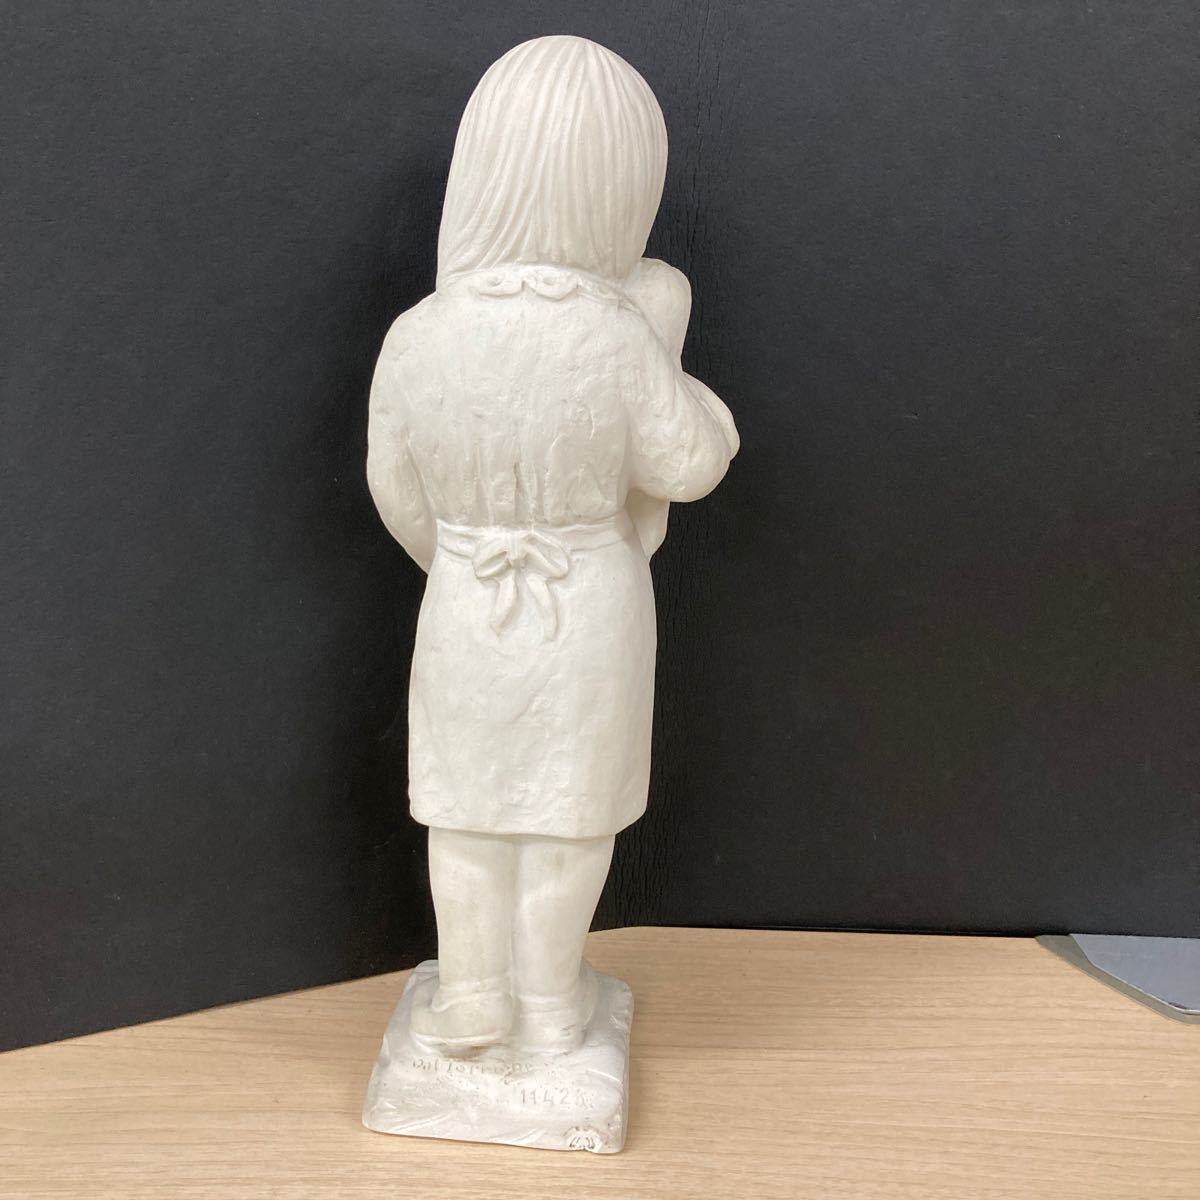 〈う809〉石膏像 女の子 人形 高さ約35cm オブジェ 置物 インテリア ガーデニング 美術品 オーナメント 彫刻 西洋 女児 人形 220715_画像2